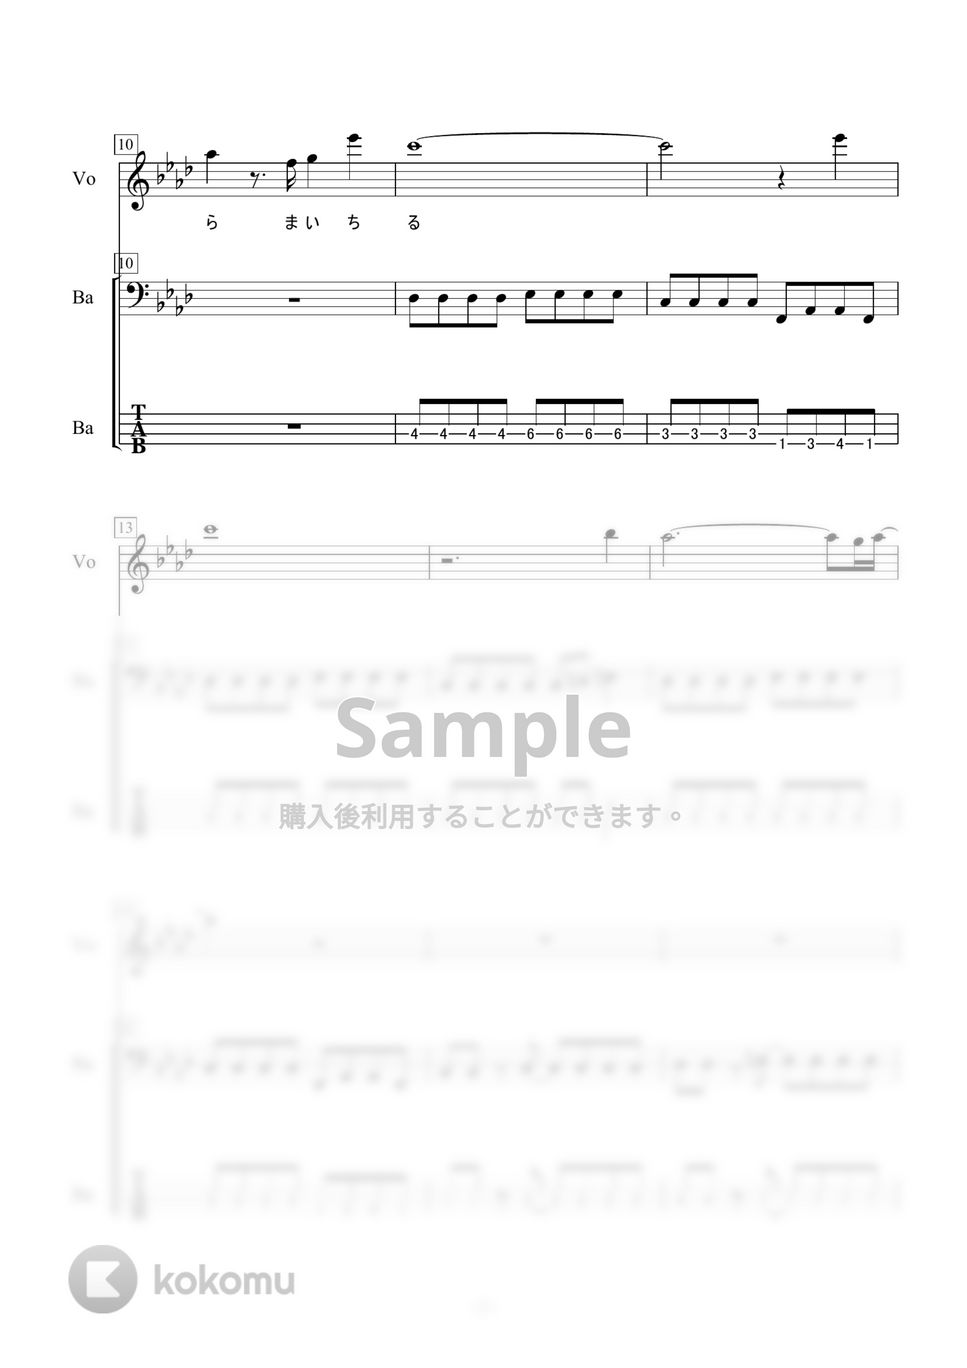 いきものがかり - SAKURA (ベース) by 二次元楽譜製作所